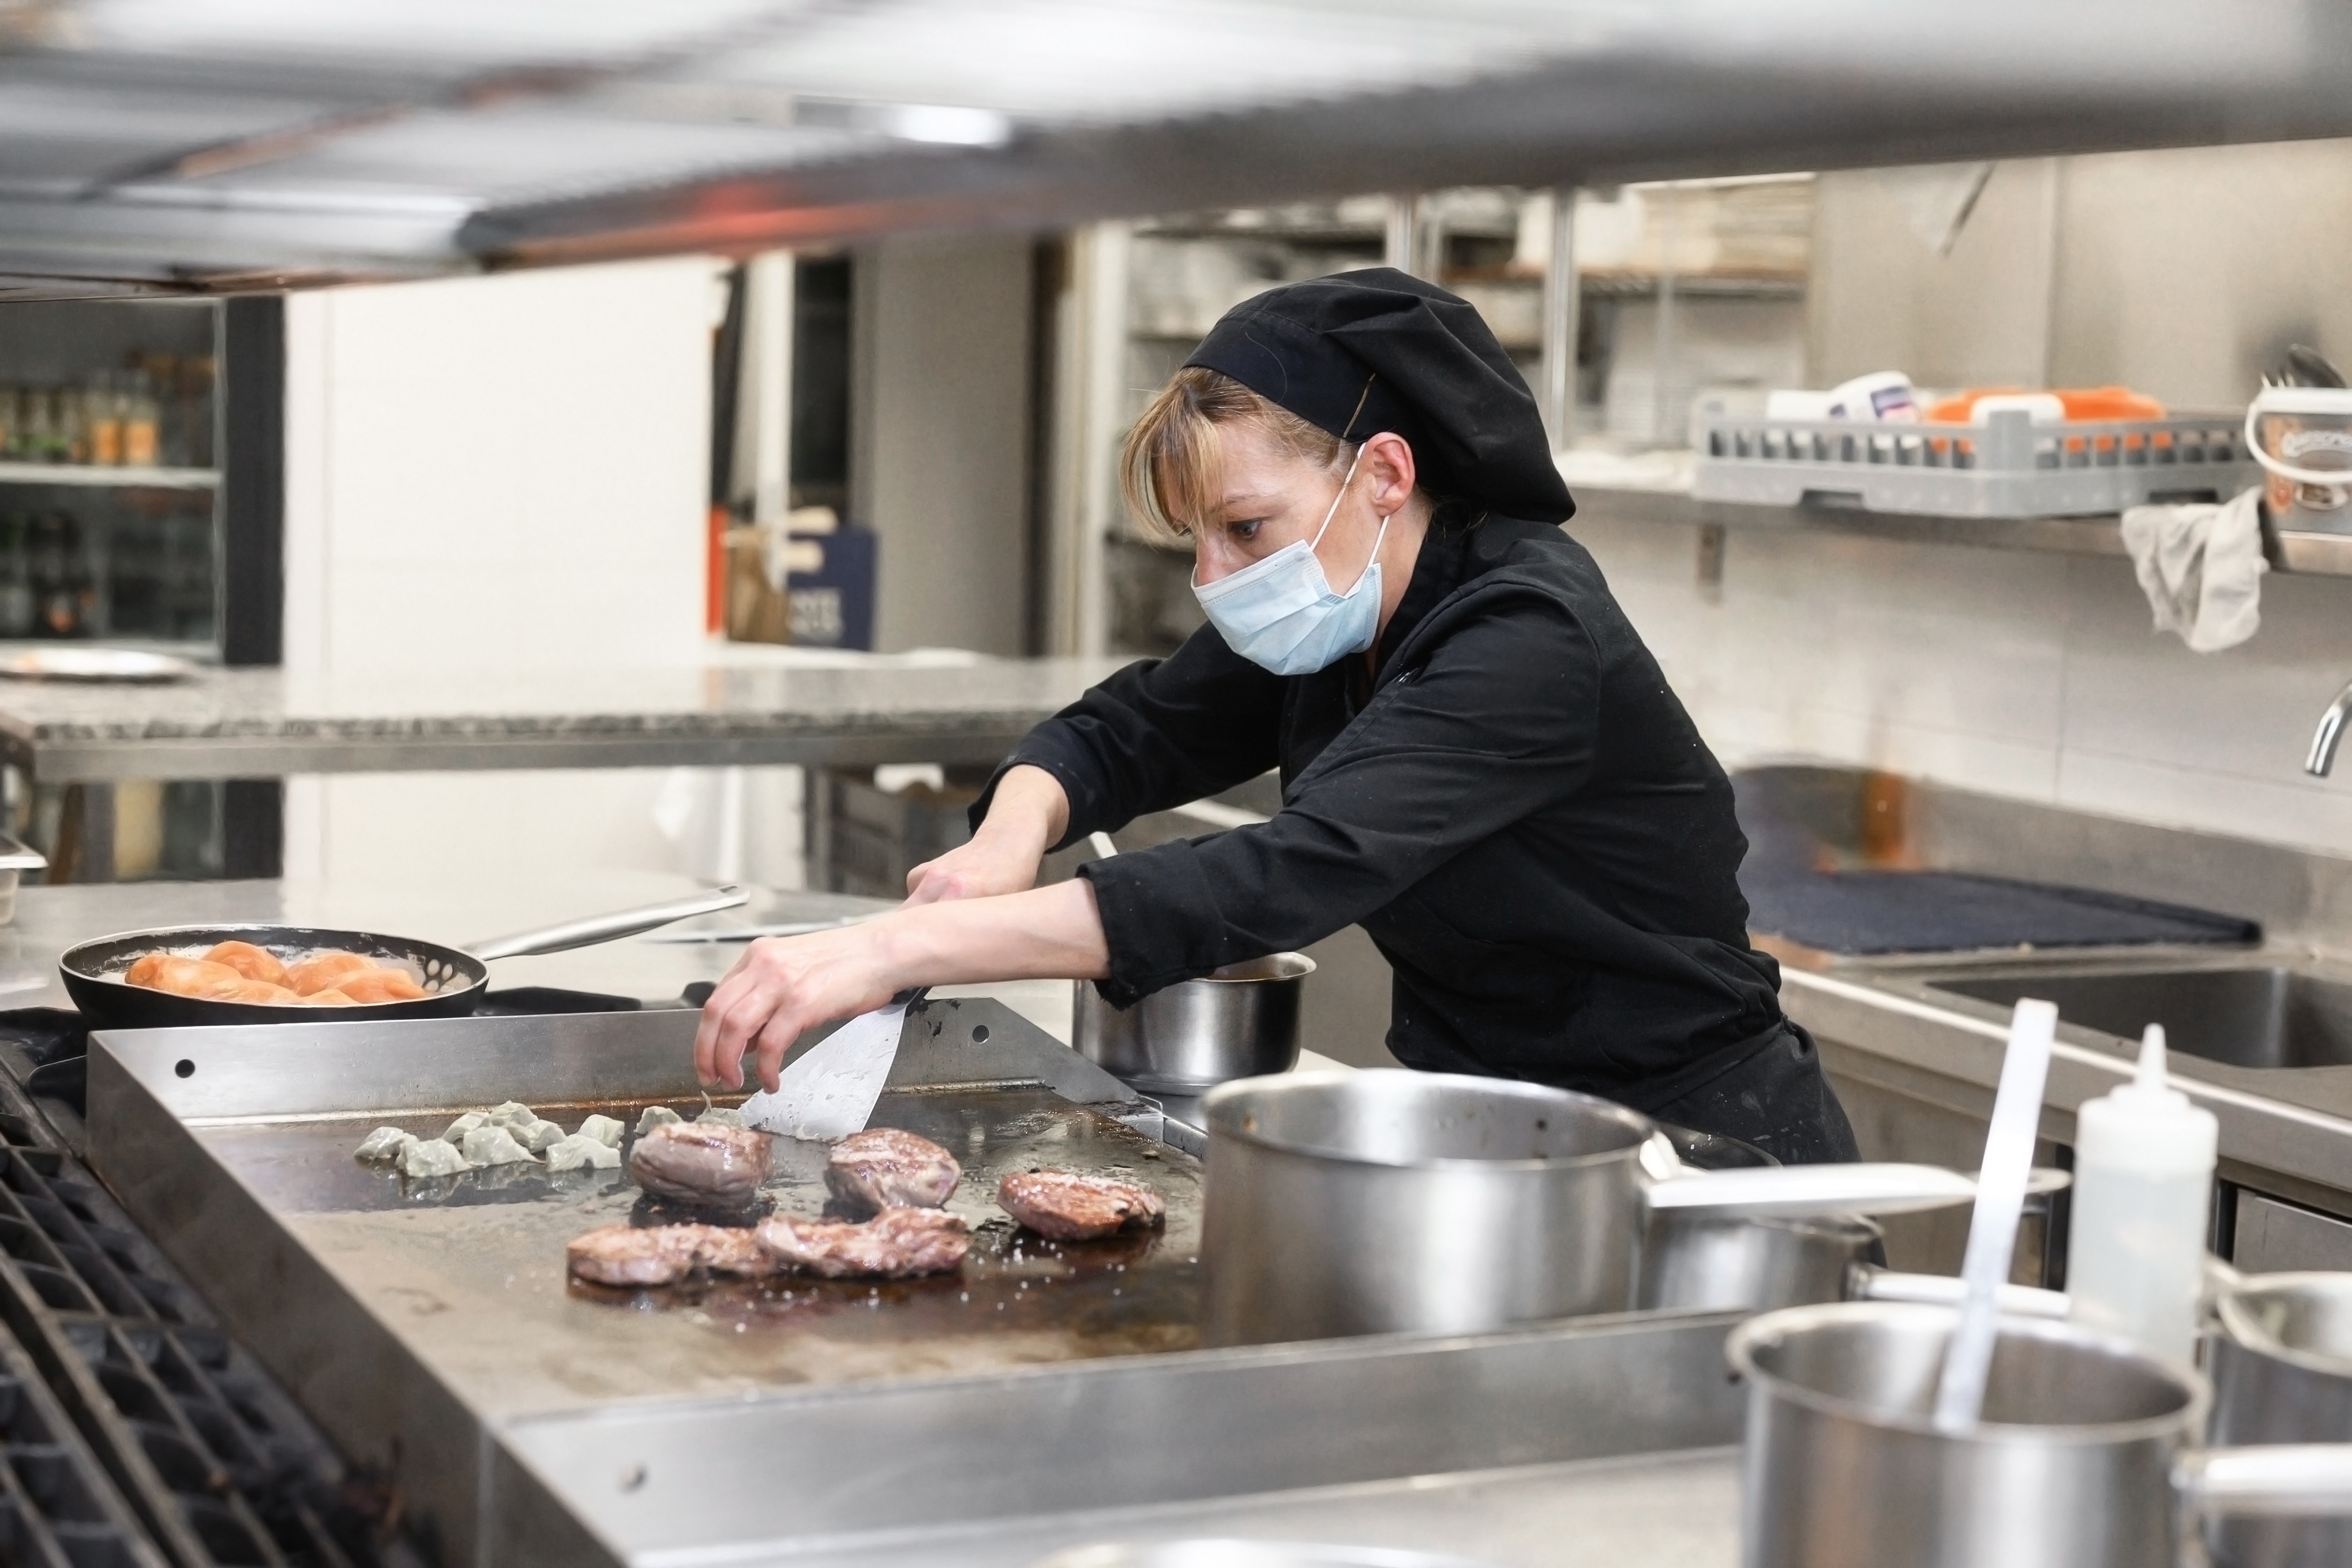 在一家餐厅的厨房里，一名身穿黑色厨师服、戴着外科口罩的女厨师在煎锅上煎牛排时看起来很紧张。